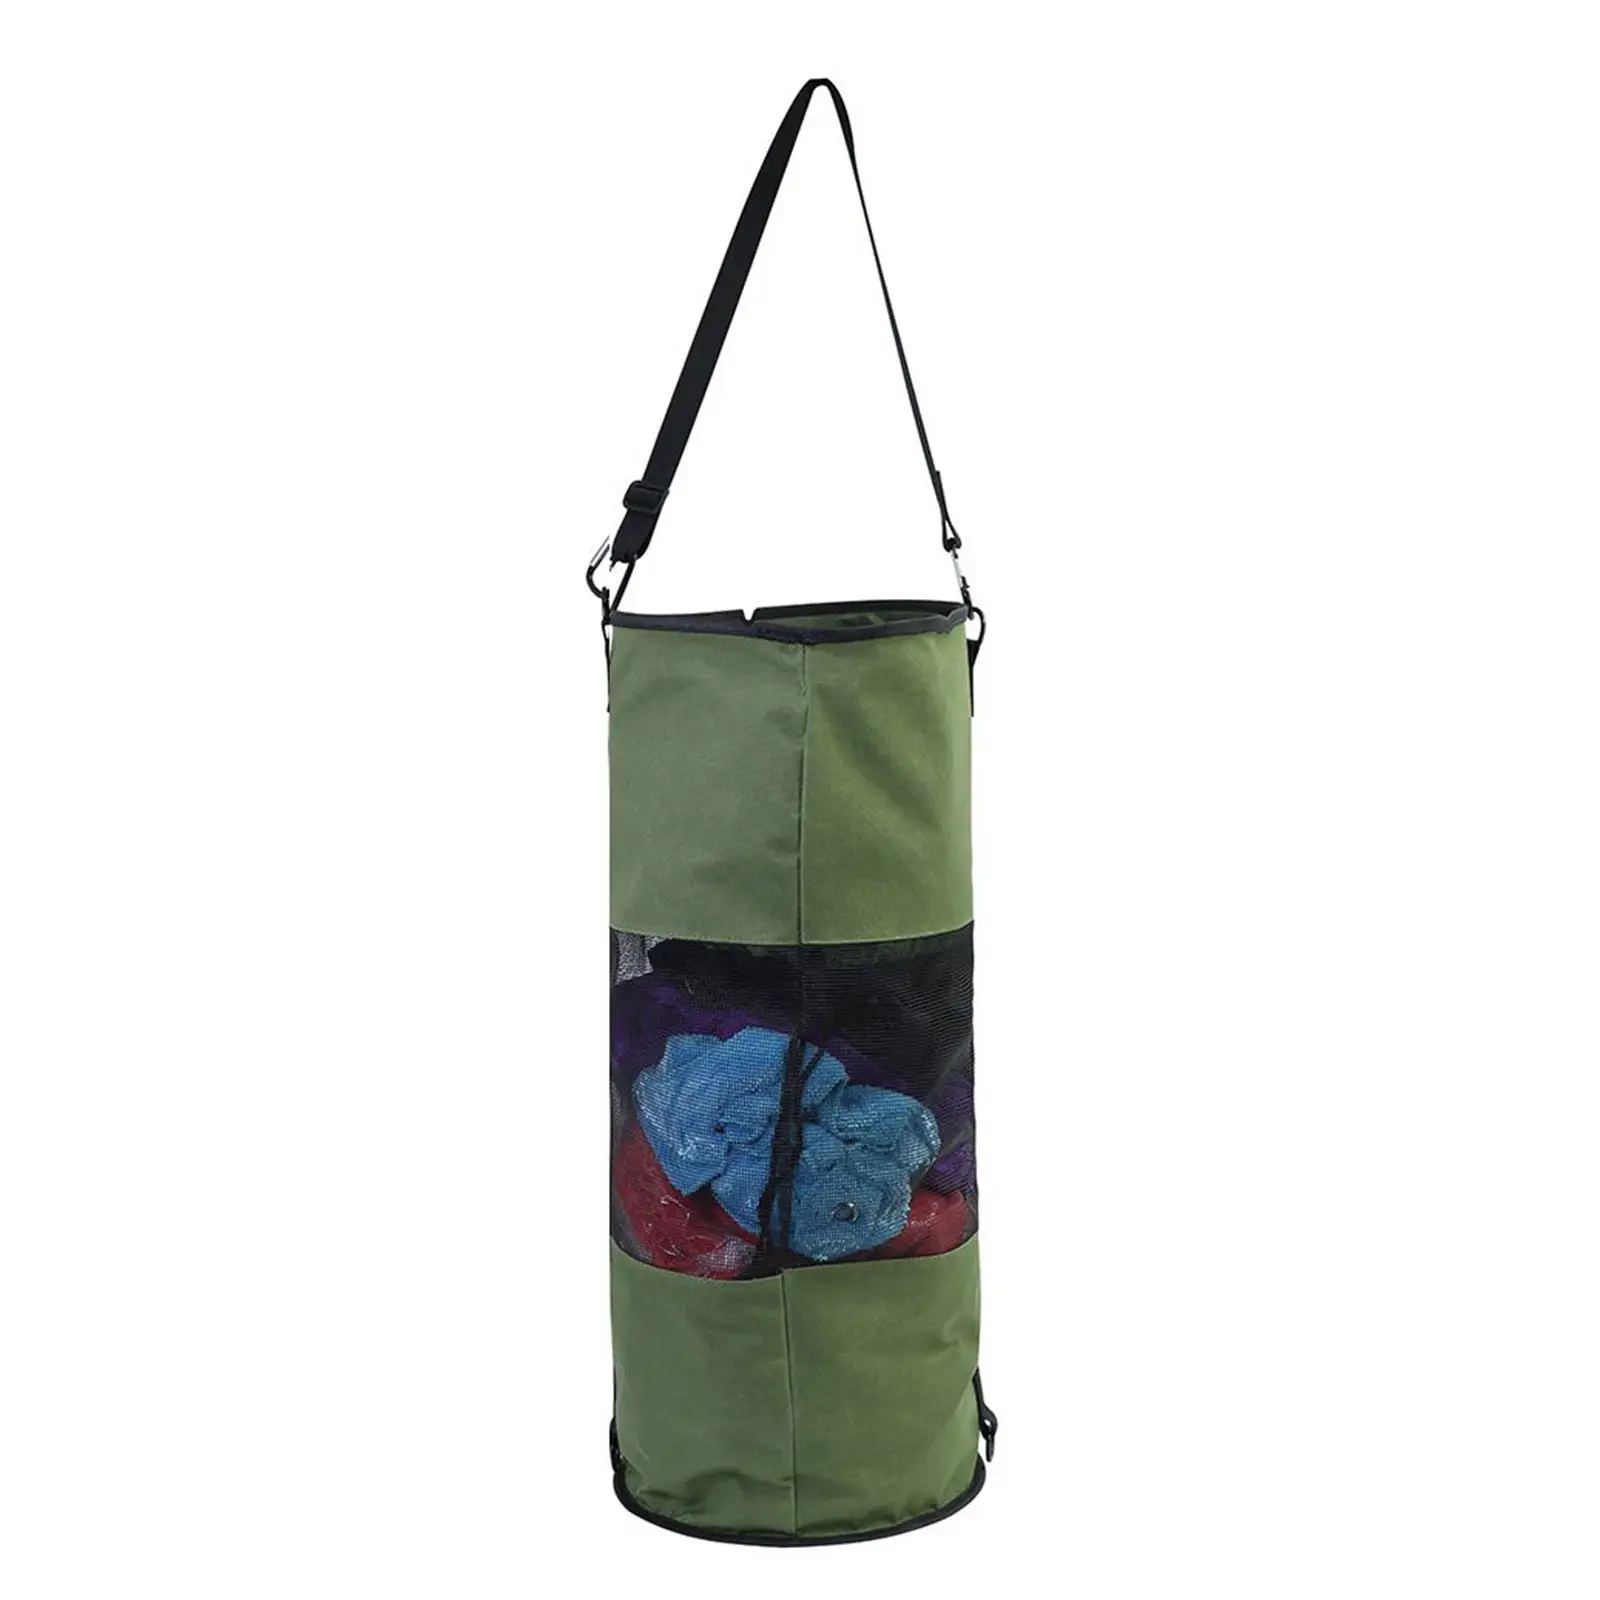 Portable Mesh Trash Bag for Boat Washable Leakproof Outdoor Garbage Bags for Boat, Kayak or Camper